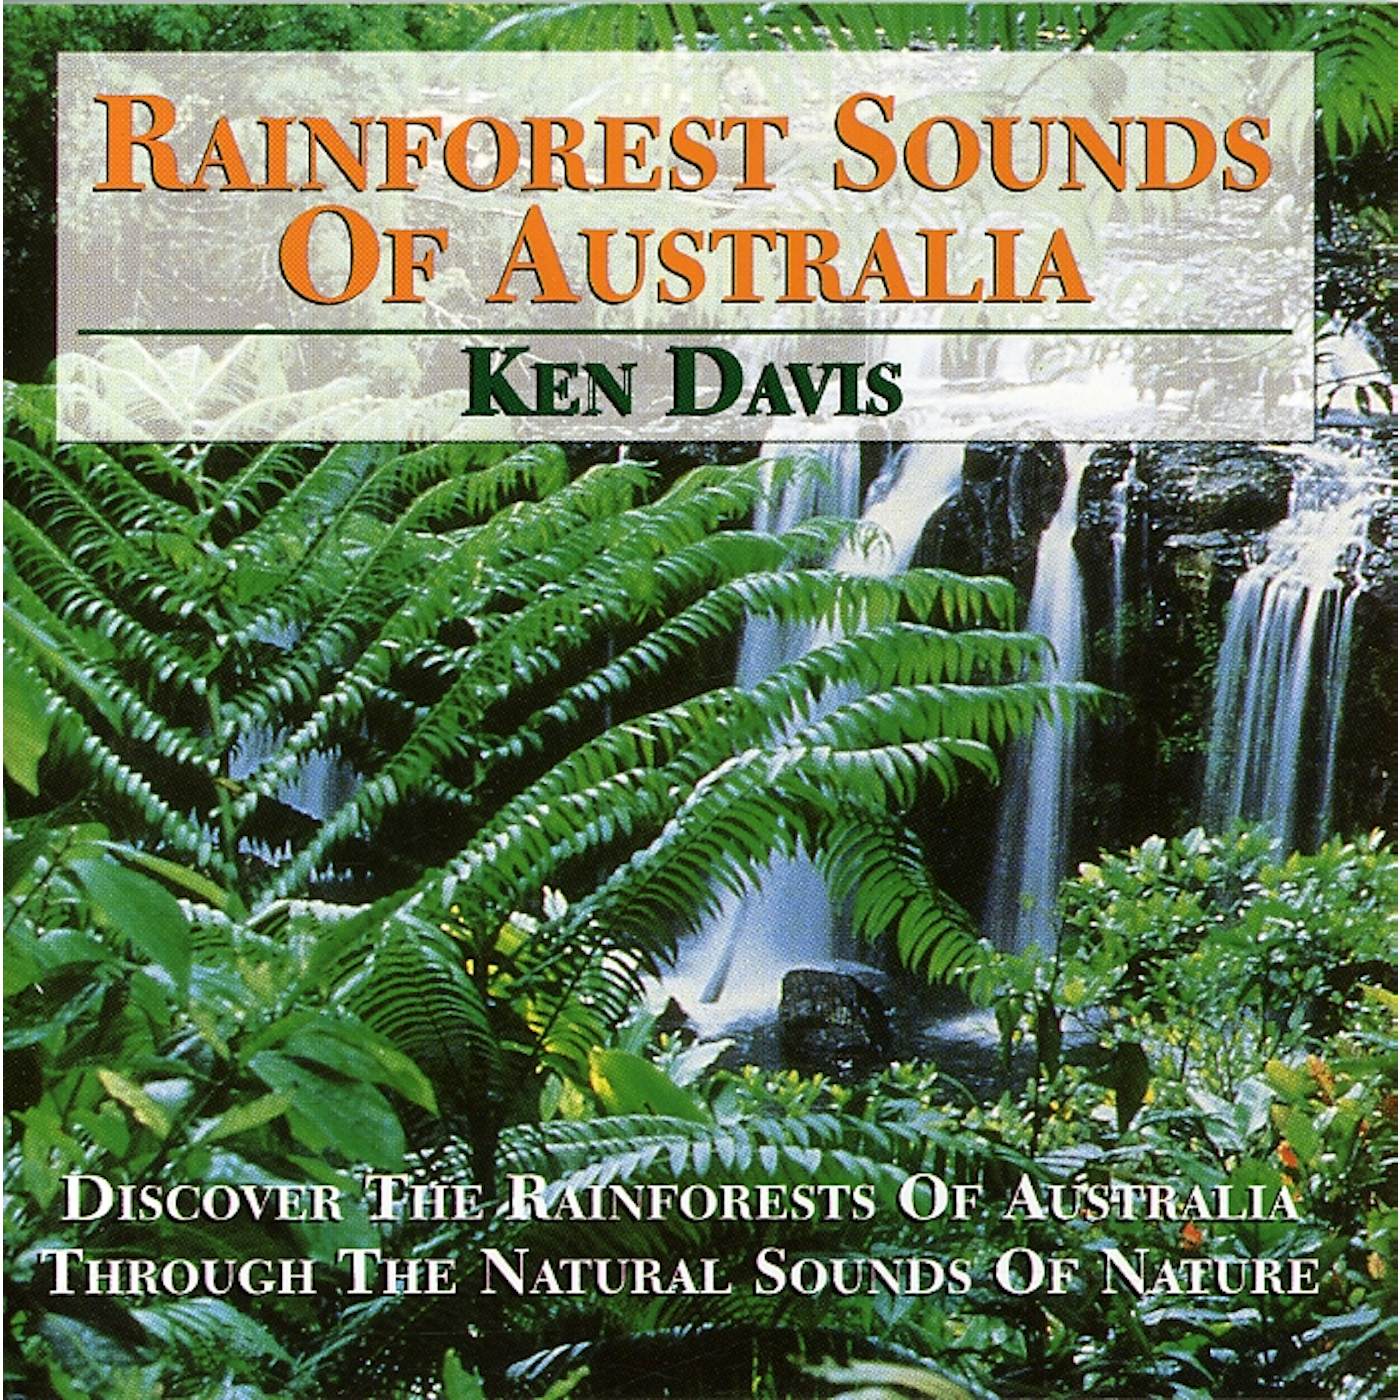 Ken Davis RAINFOREST SOUNDS OF AUSTRALIA CD